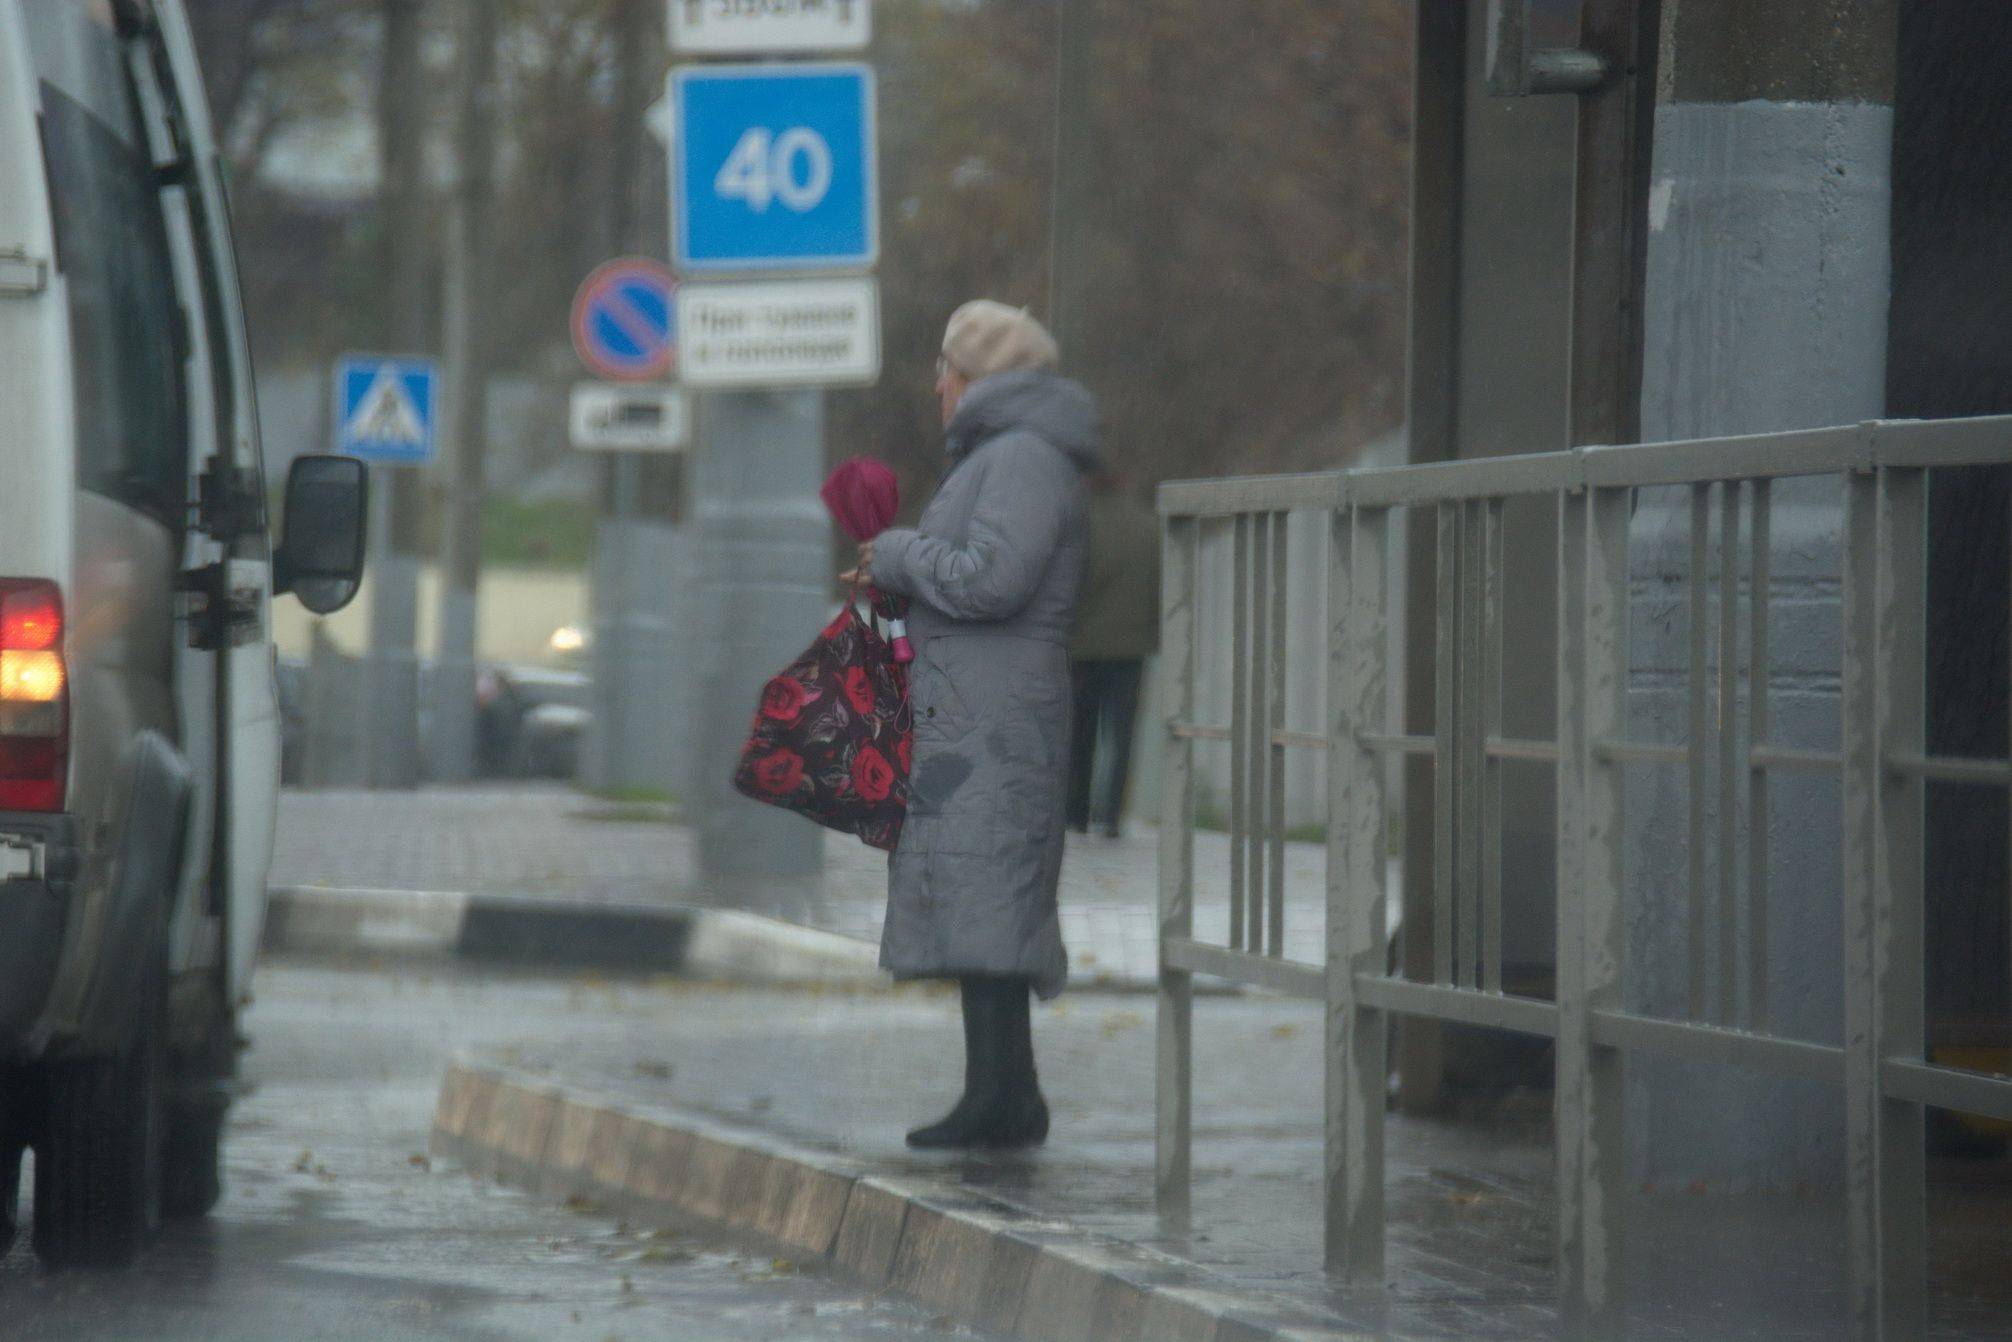 Пожилая жительница Новороссийска просит за всех соседей: «Верните остановку на место»